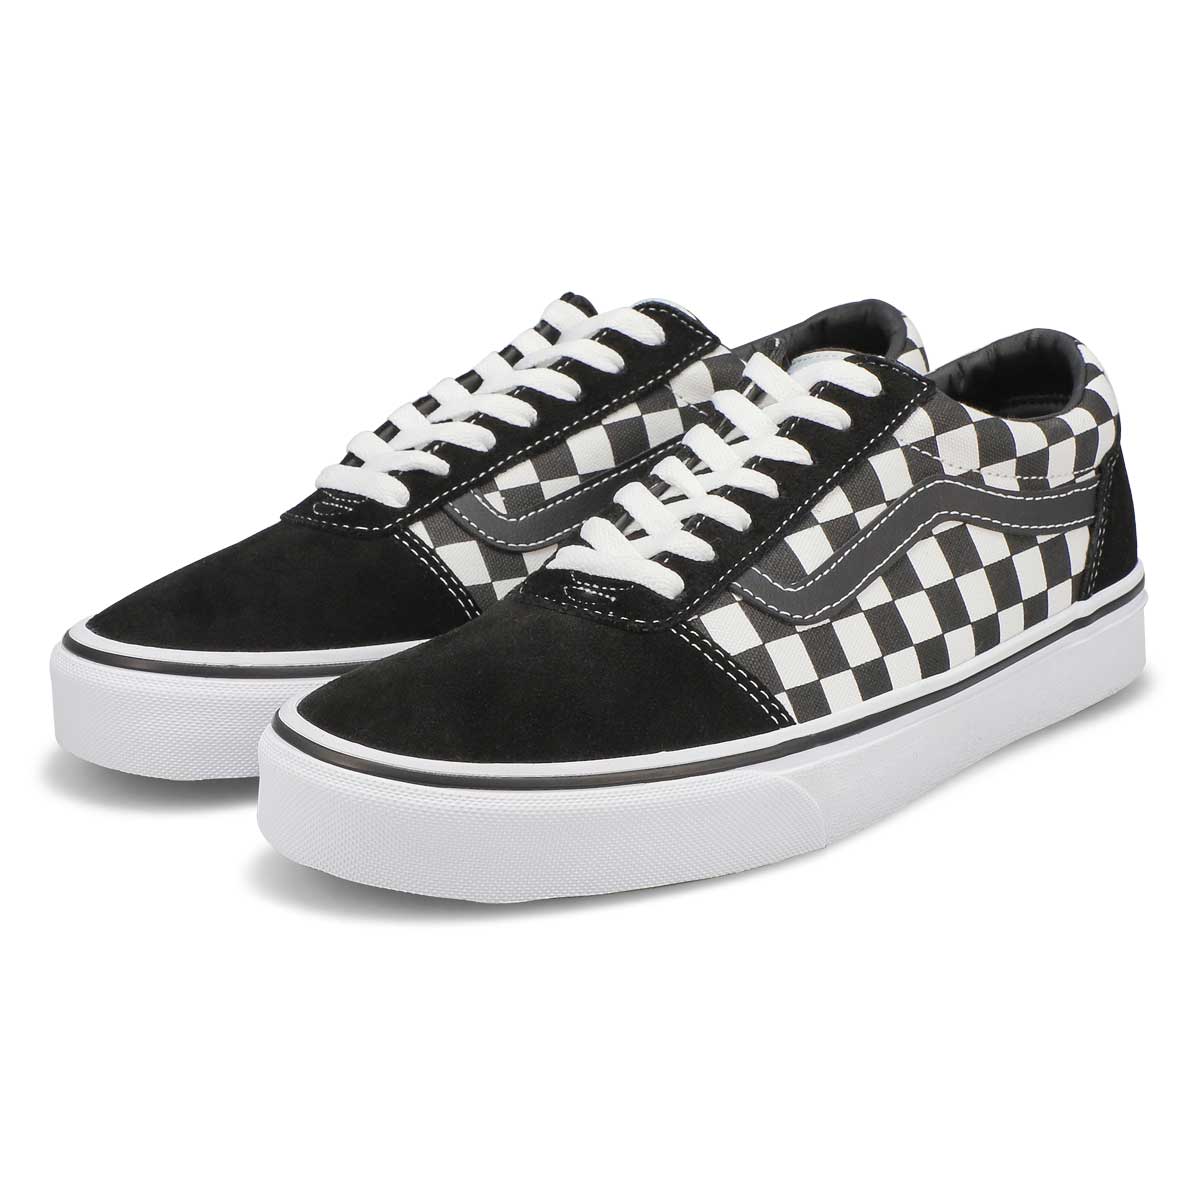 Vans Men's Ward Sneaker - Black/White | SoftMoc.com